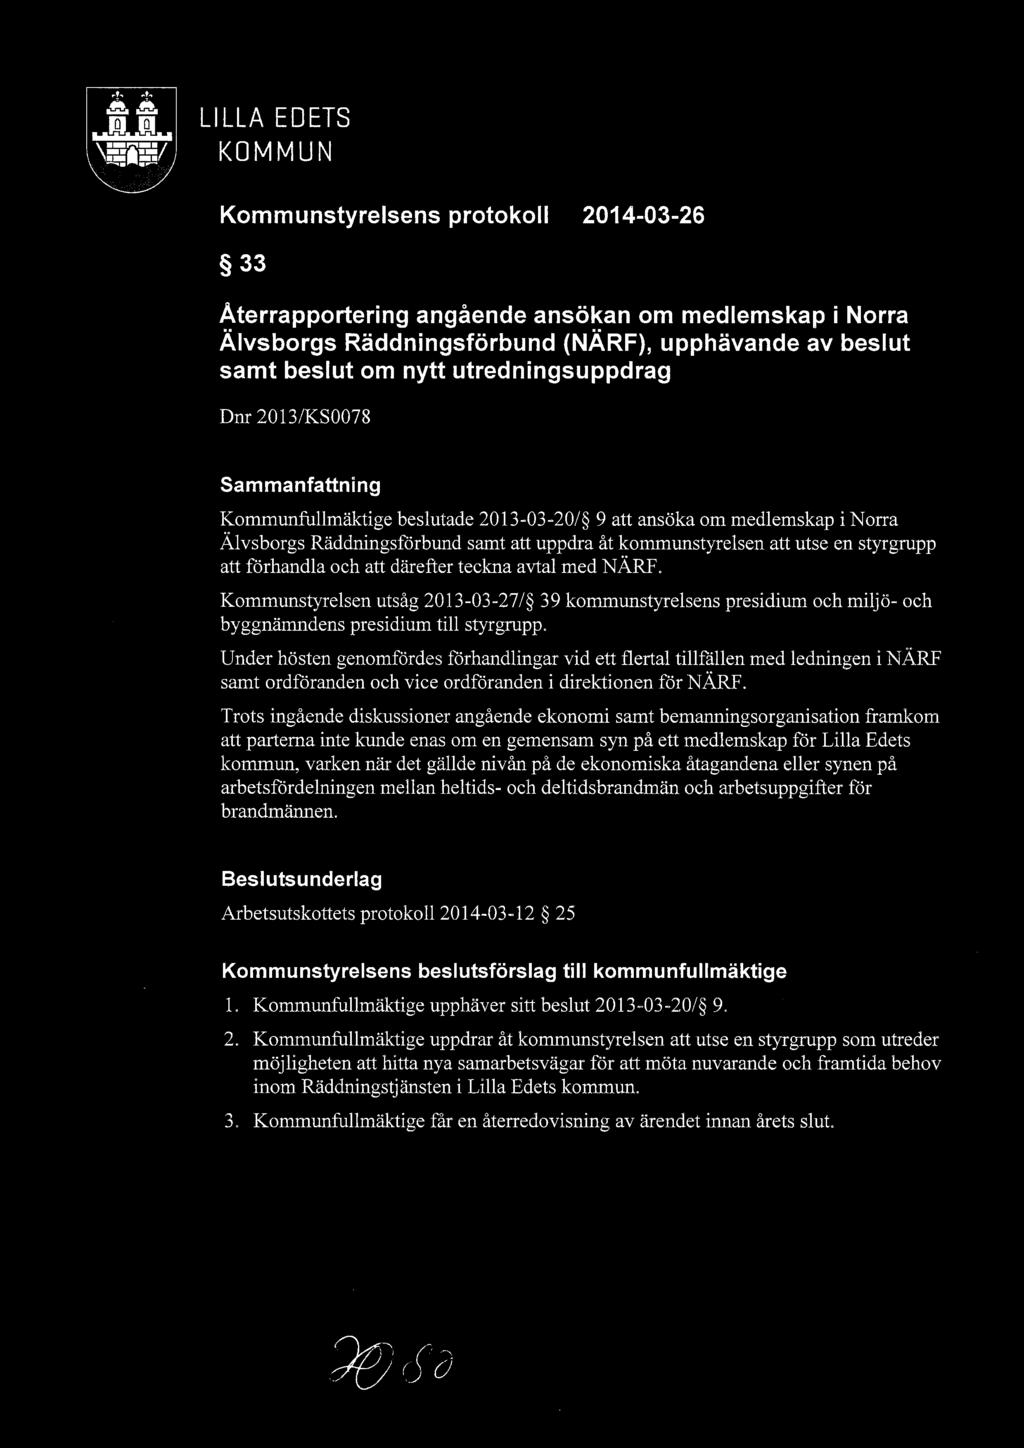 utredningsuppdrag Dnr 2013/KS0078 Sammanfattning Kommunfullmäktige beslutade 2013-0320/ 9 att ansöka om medlemskap i Norra Älvsborgs Räddningsförbund samt att uppdra åt kommunstyrelsen att utse en